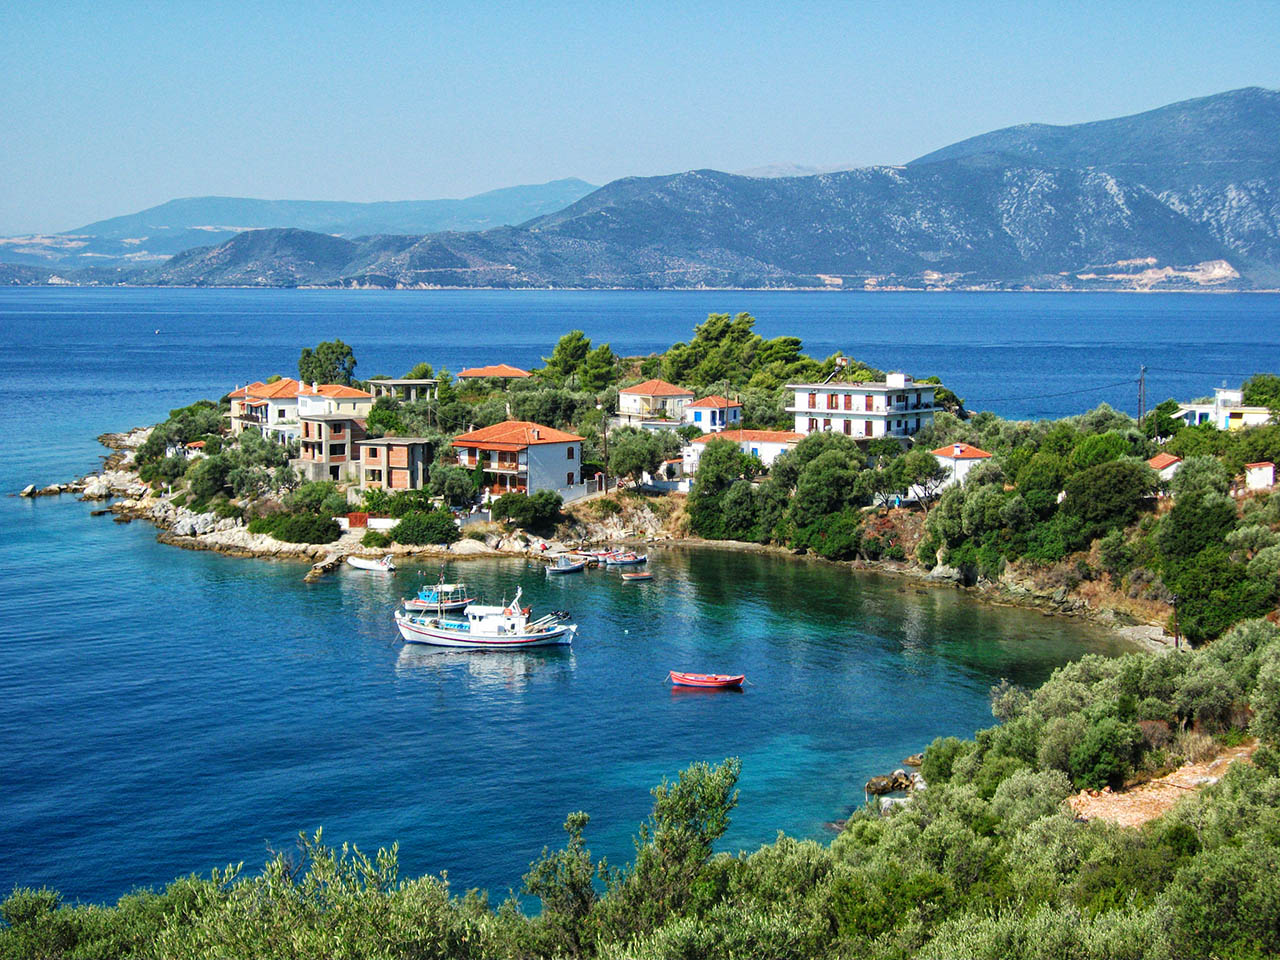 Ο παράδεισος των αγοραφοβικών: Το ελληνικό νησί που πρέπει να πας διακοπές αν φοβάσαι τον συνωστισμό (βίντεο) (upd)